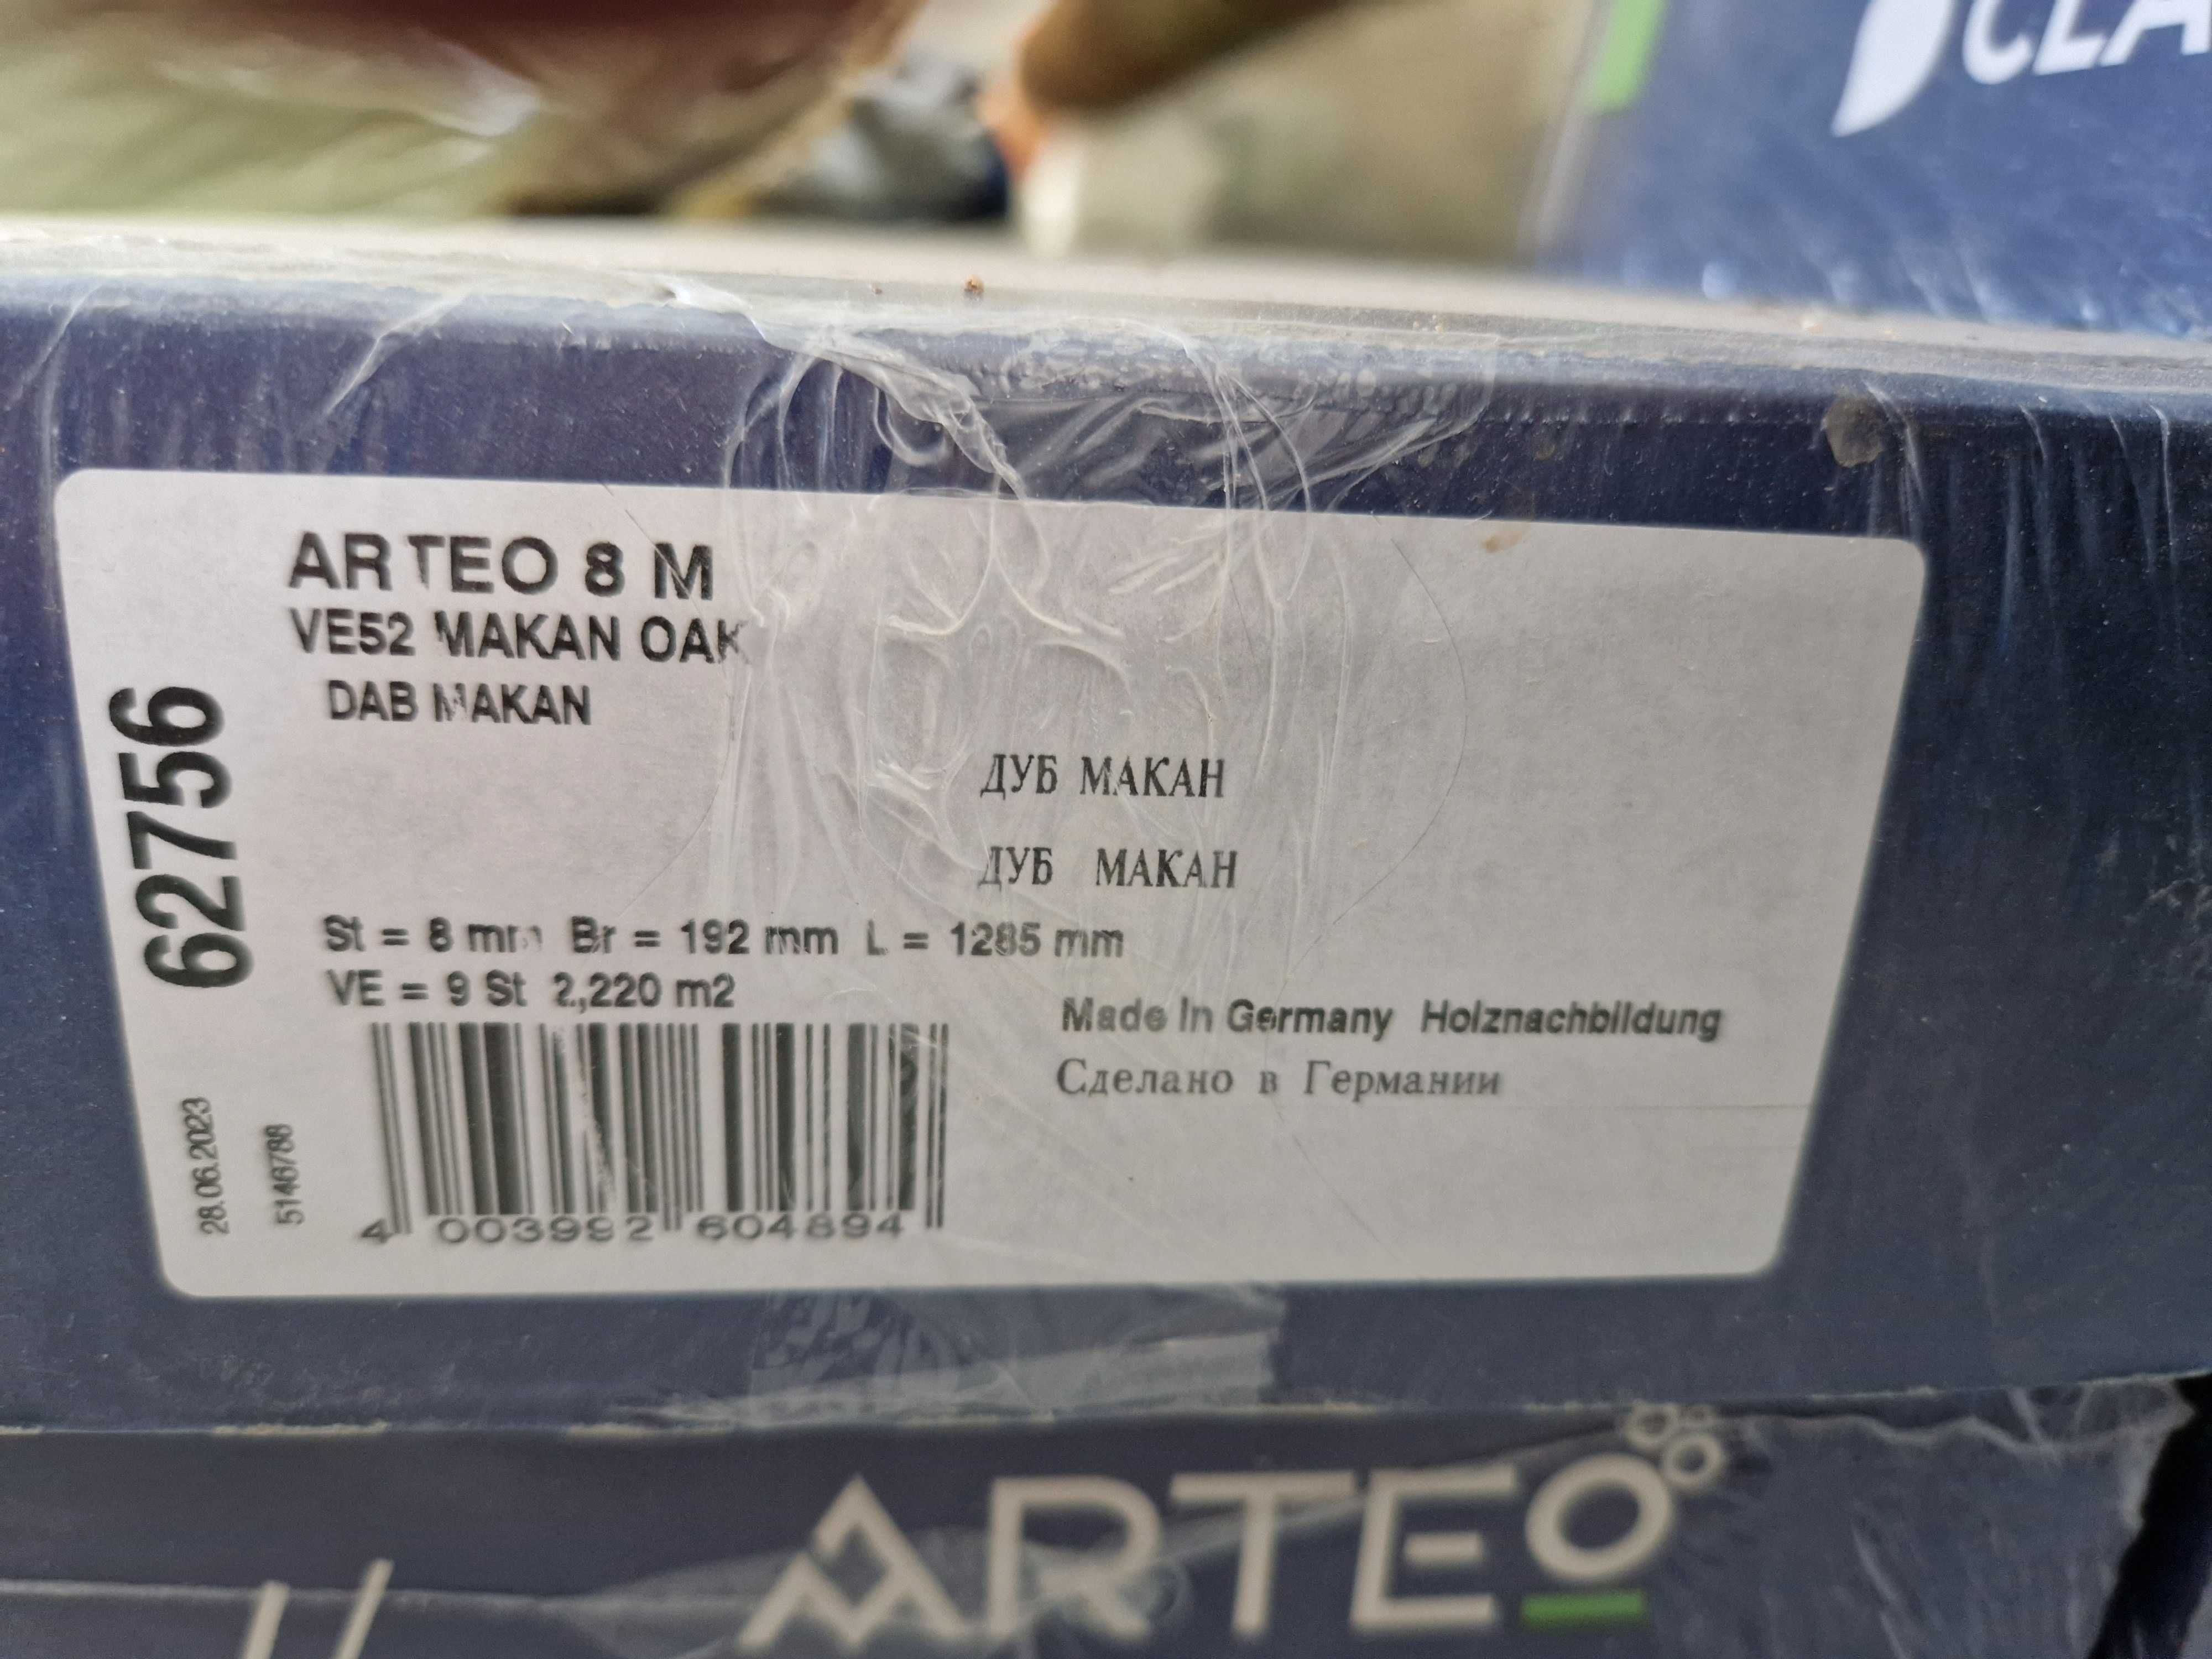 Sprzedam taniej panele podłogowe Arteo (Classen) Dąb Makan 8mm